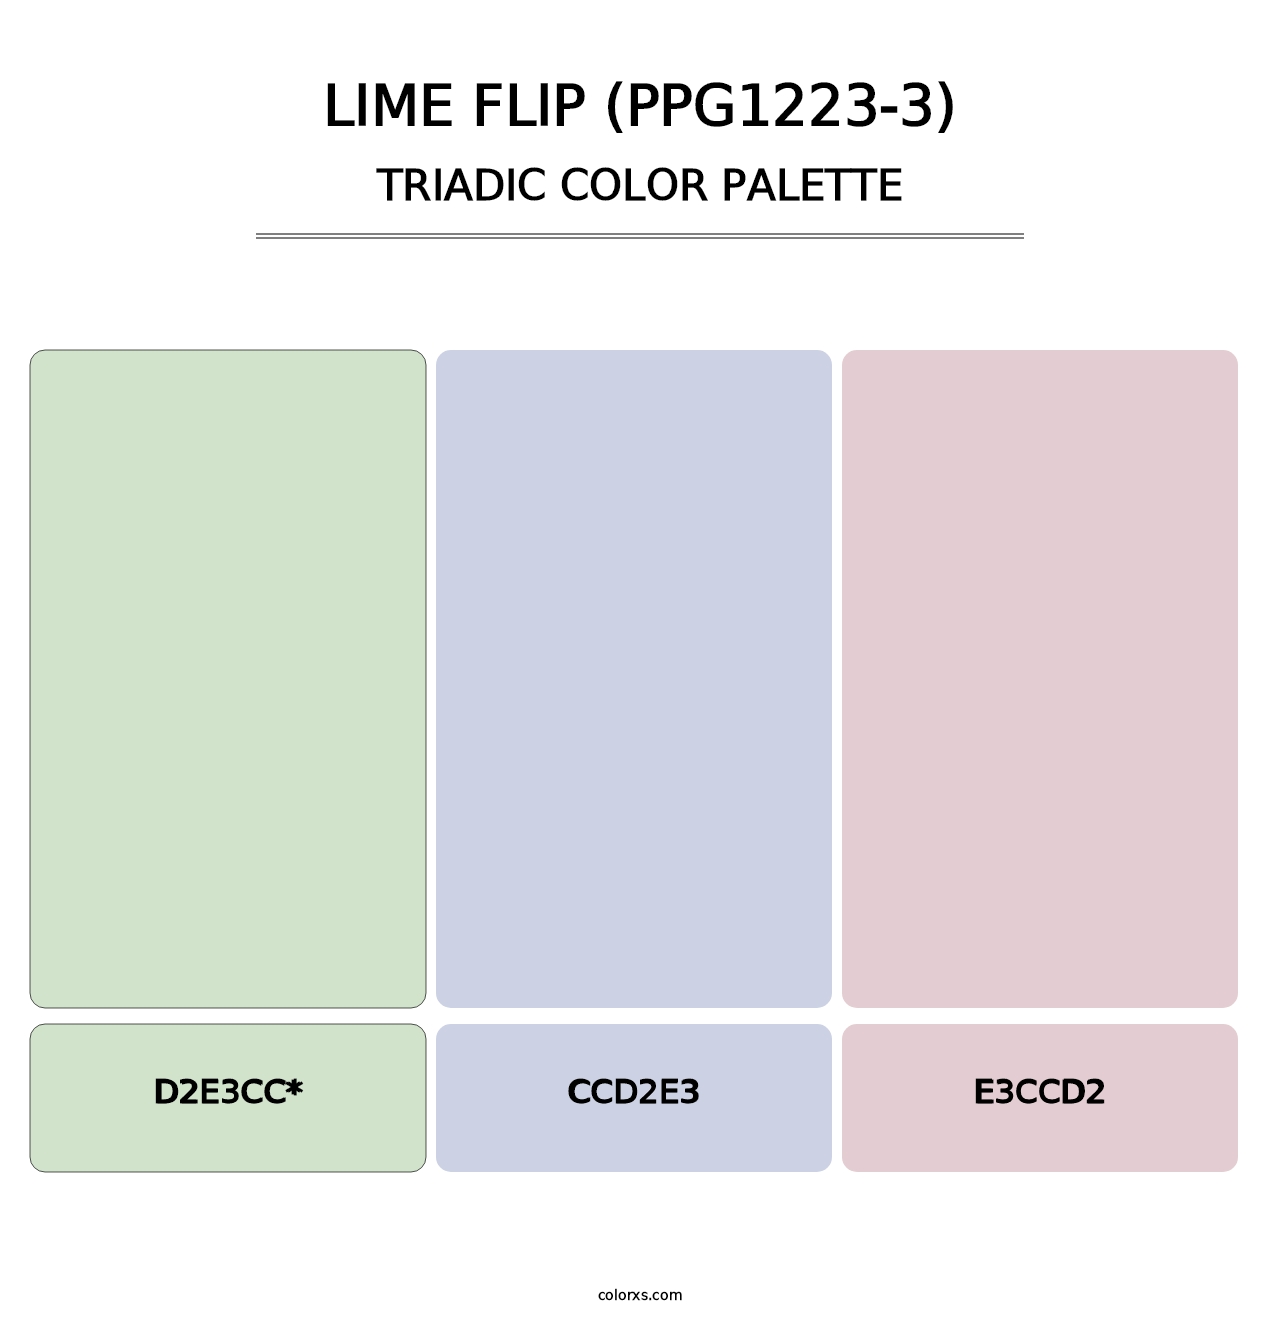 Lime Flip (PPG1223-3) - Triadic Color Palette